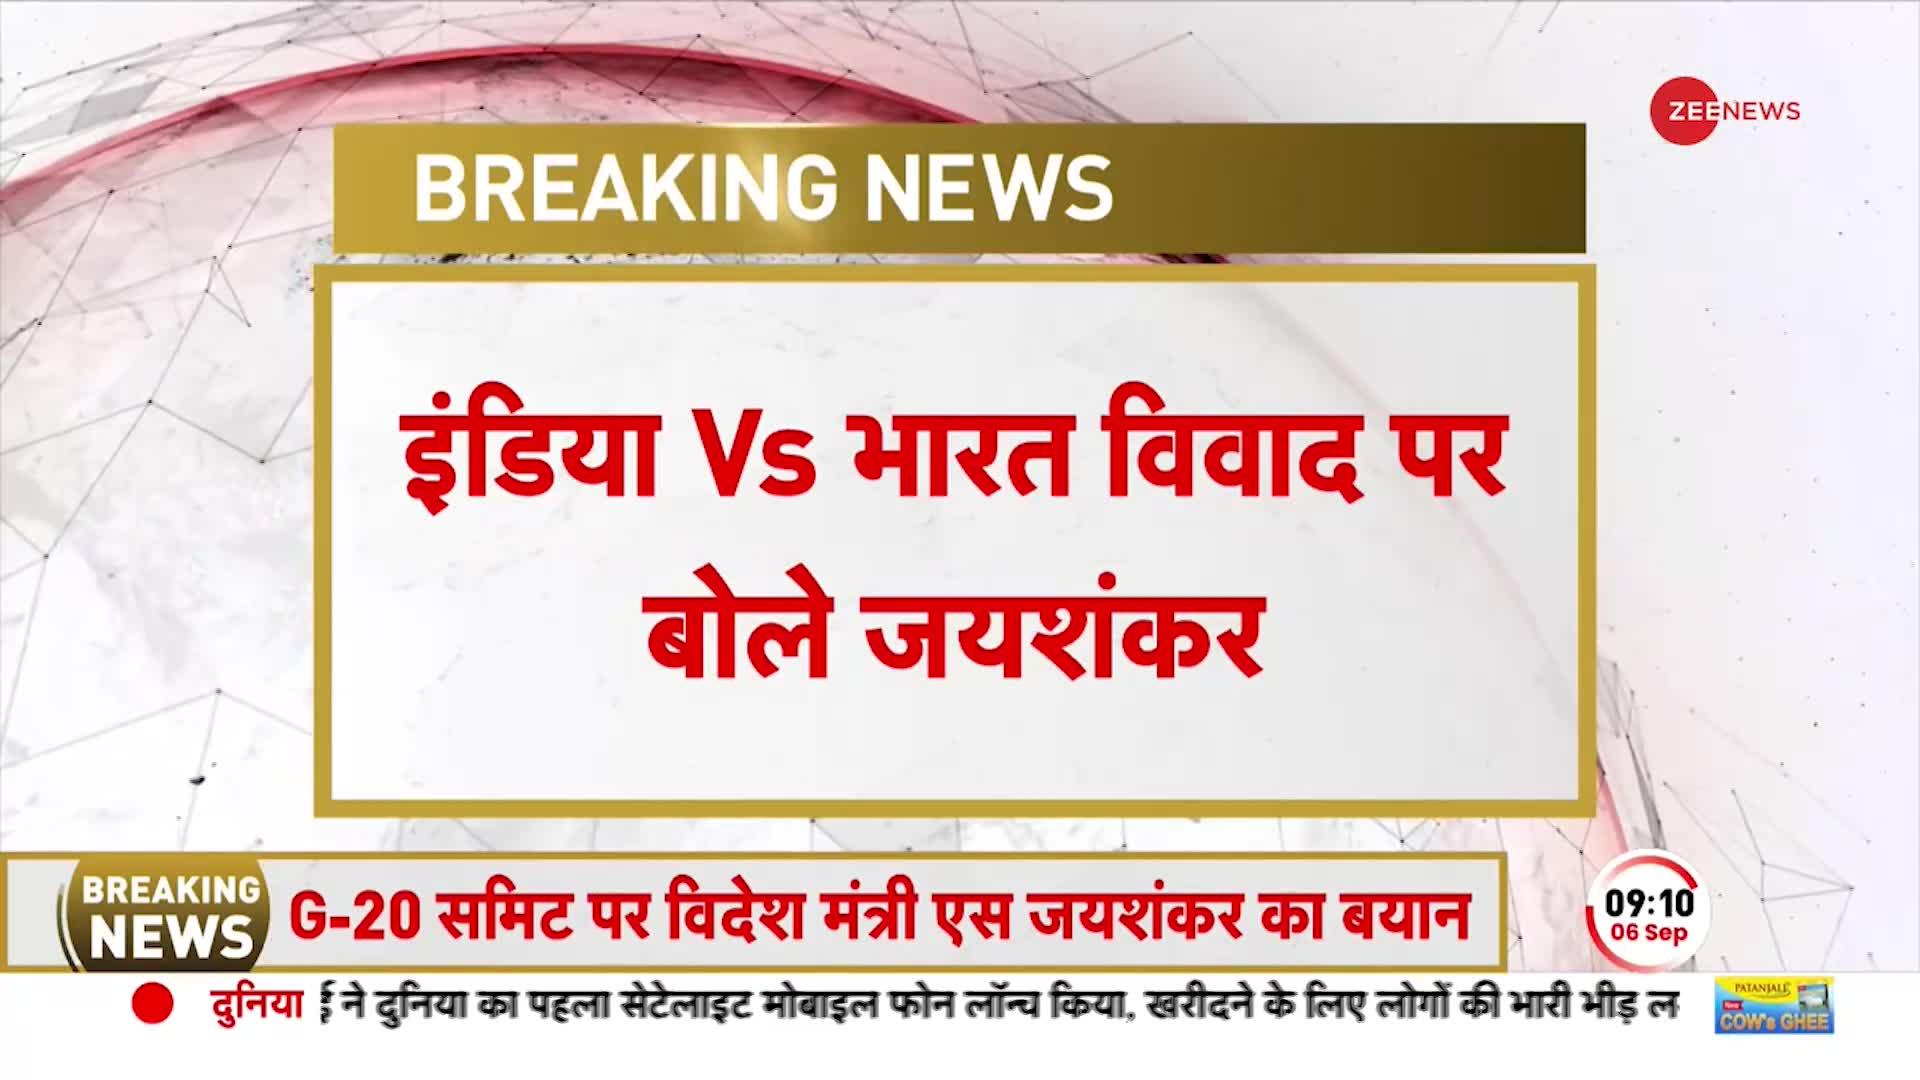 Breaking News: India Vs Bharat पर बोले जयशंकर प्रसाद, संविधान में लिखा है इंडिया जो भारत है